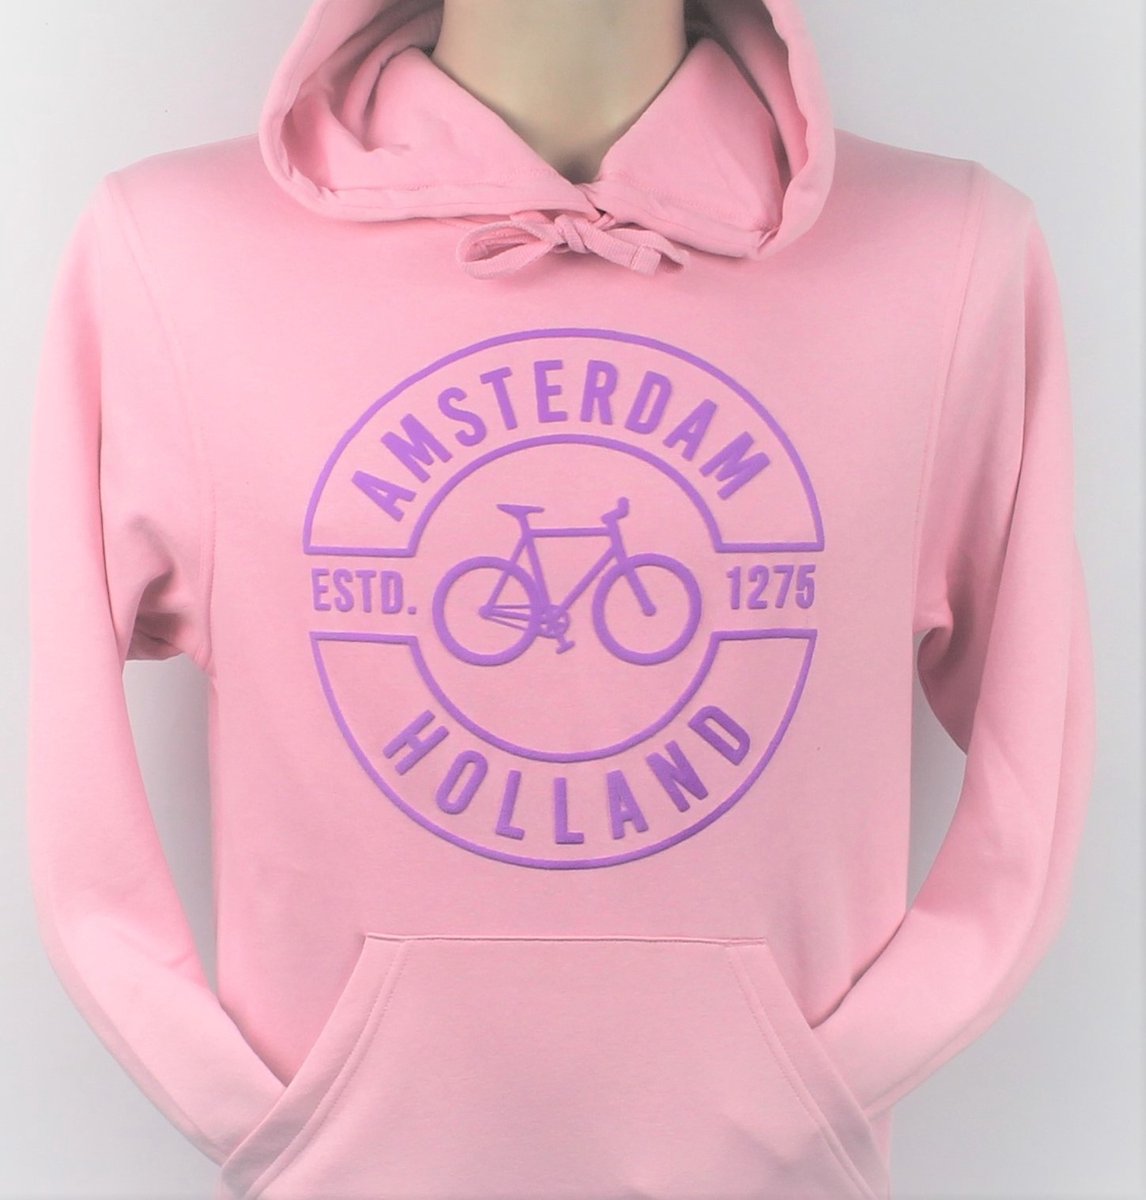 Hooded Sweater - Met Trekkoord - Capuchon - Chill - Trui - Vest - met capuchon - Outdoor - Fiets - Discover - 1275 -Amsterdam - Bike Town - Travel - Paarse Fiets - Licht Roze - Maat XXL - 2XL